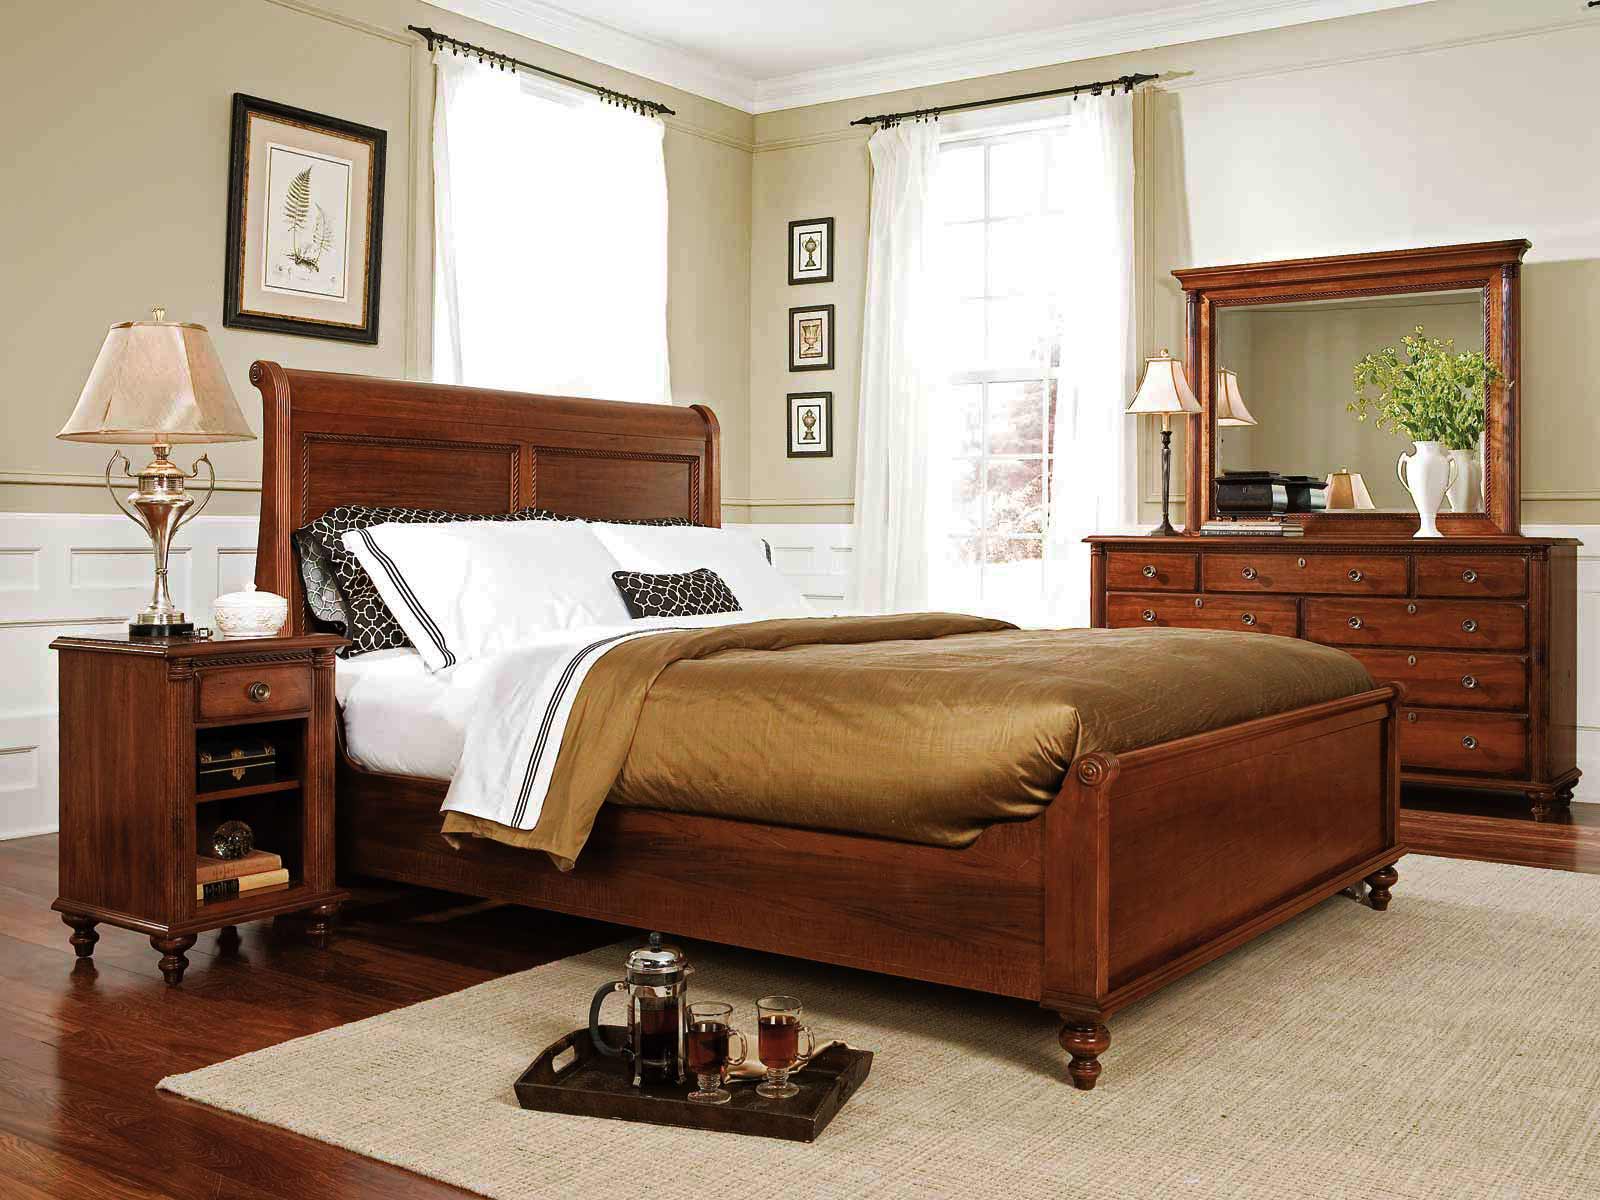 victorian mahogany bedroom furniture